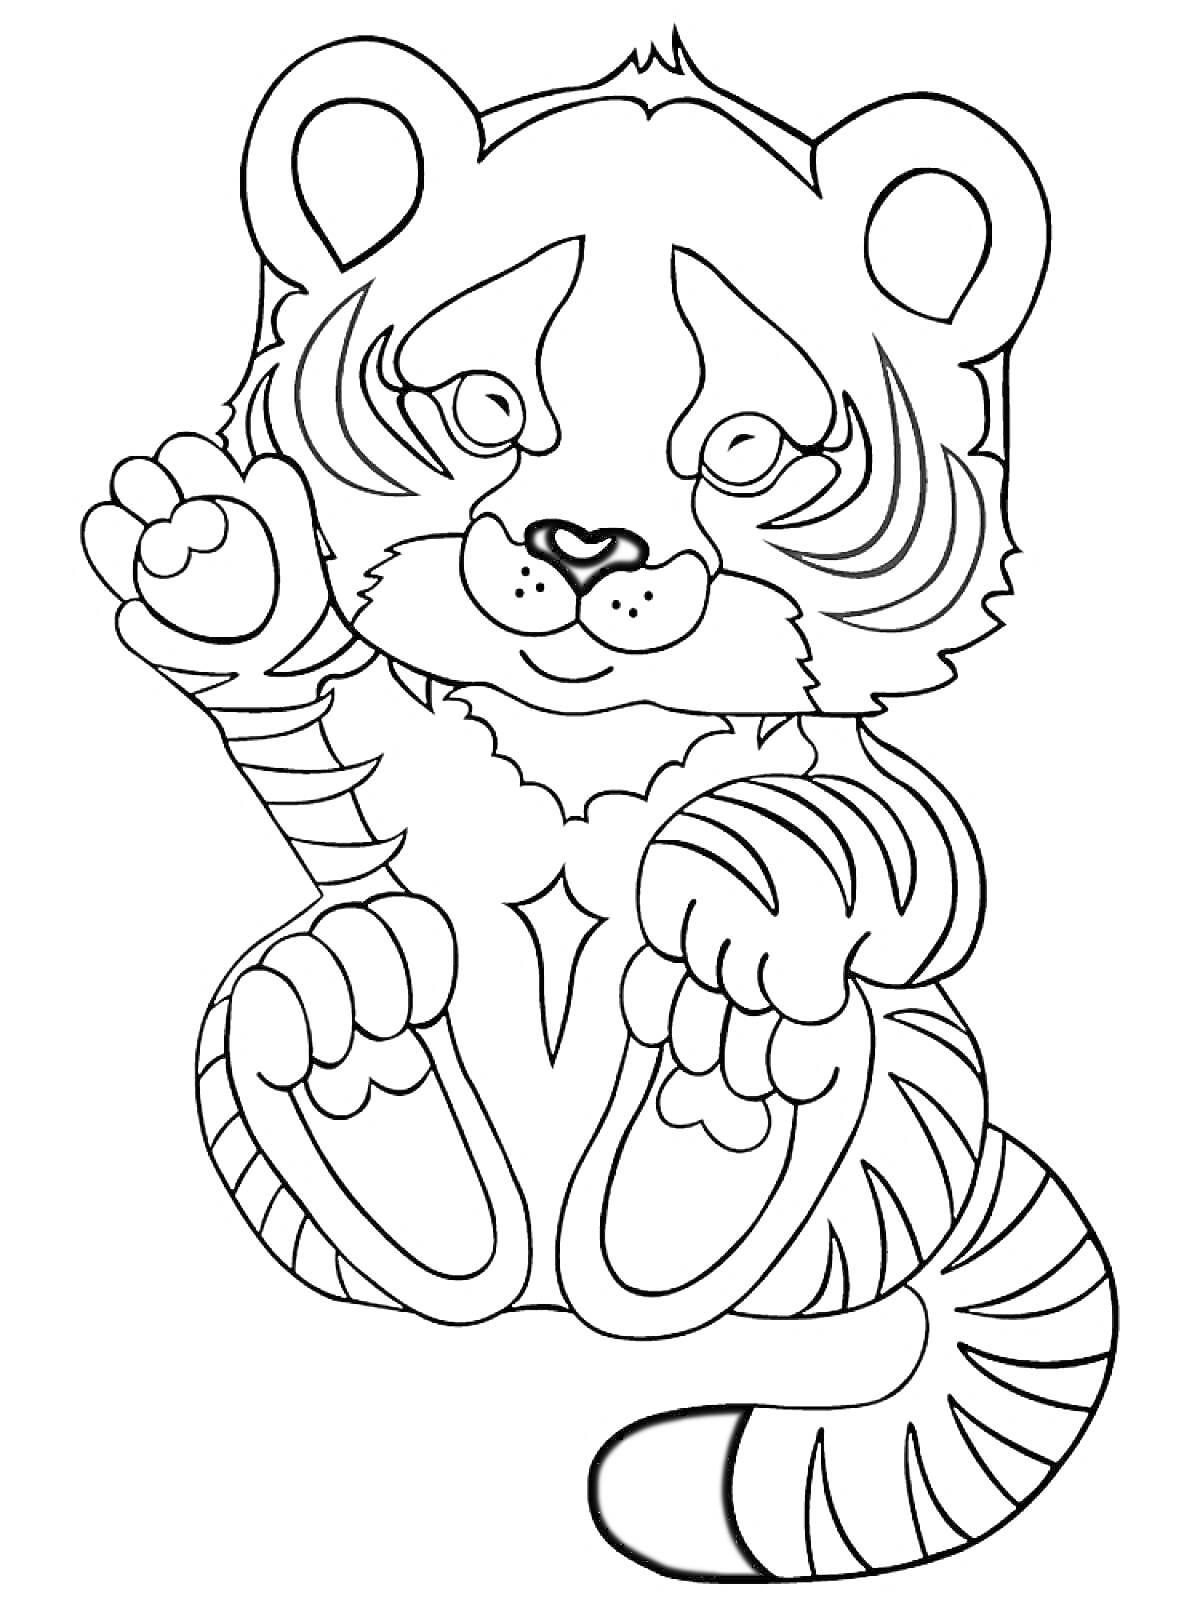 Раскраска Сидящий тигрёнок с поднятой лапой